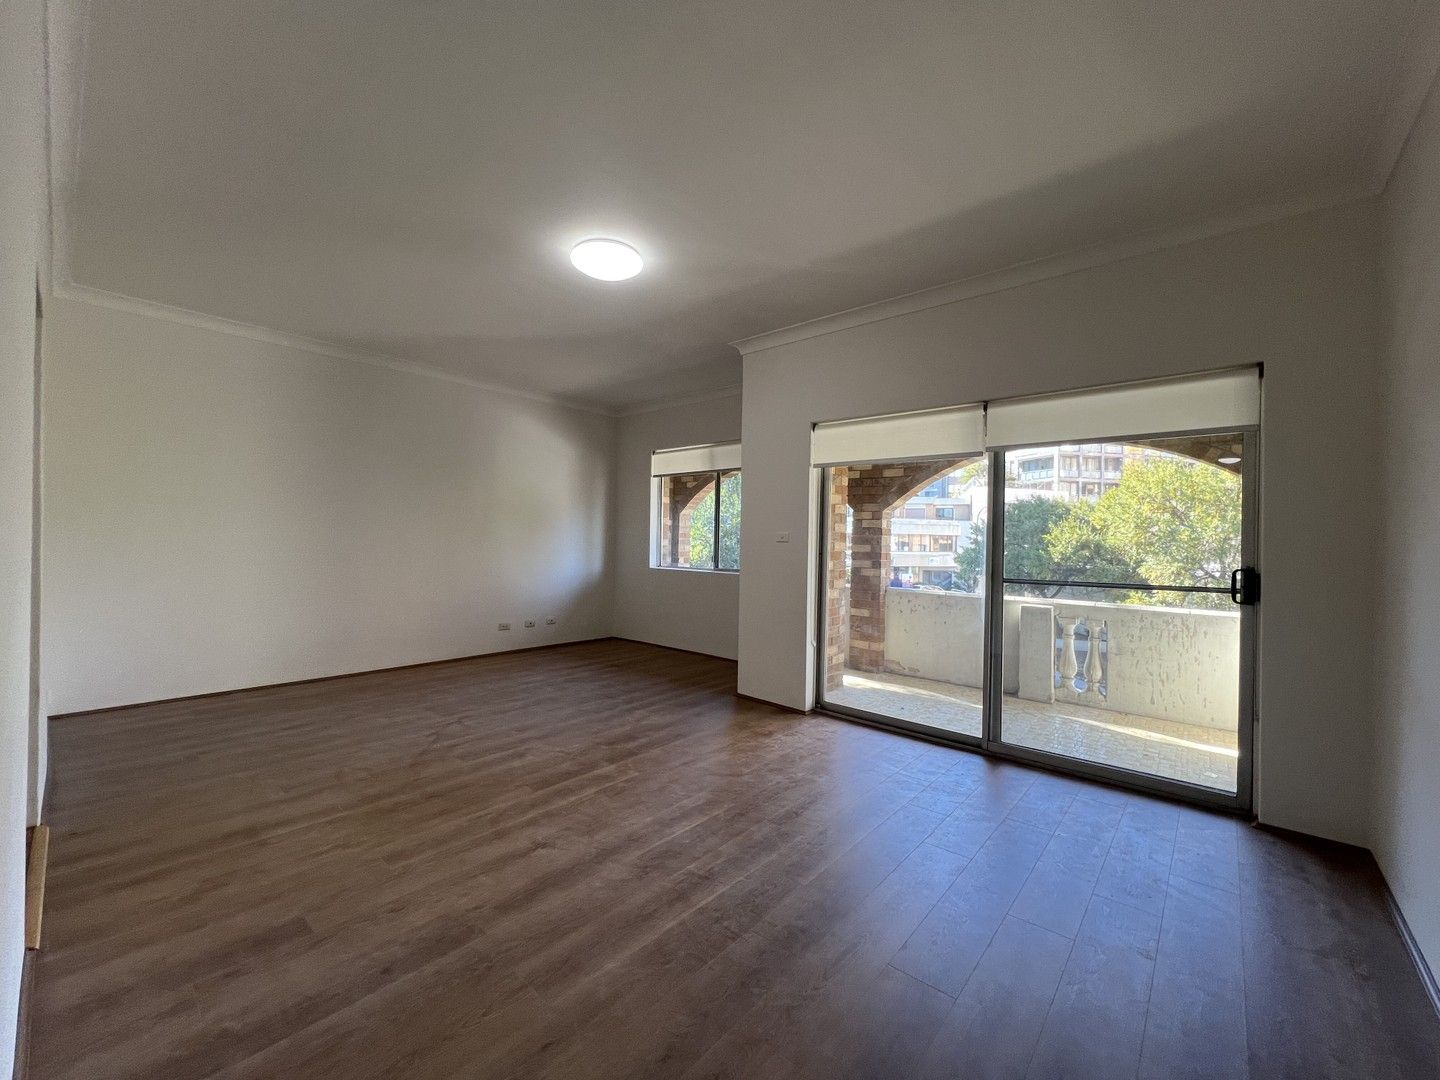 2 bedrooms Apartment / Unit / Flat in 4/63 WONIORA ROAD HURSTVILLE NSW, 2220